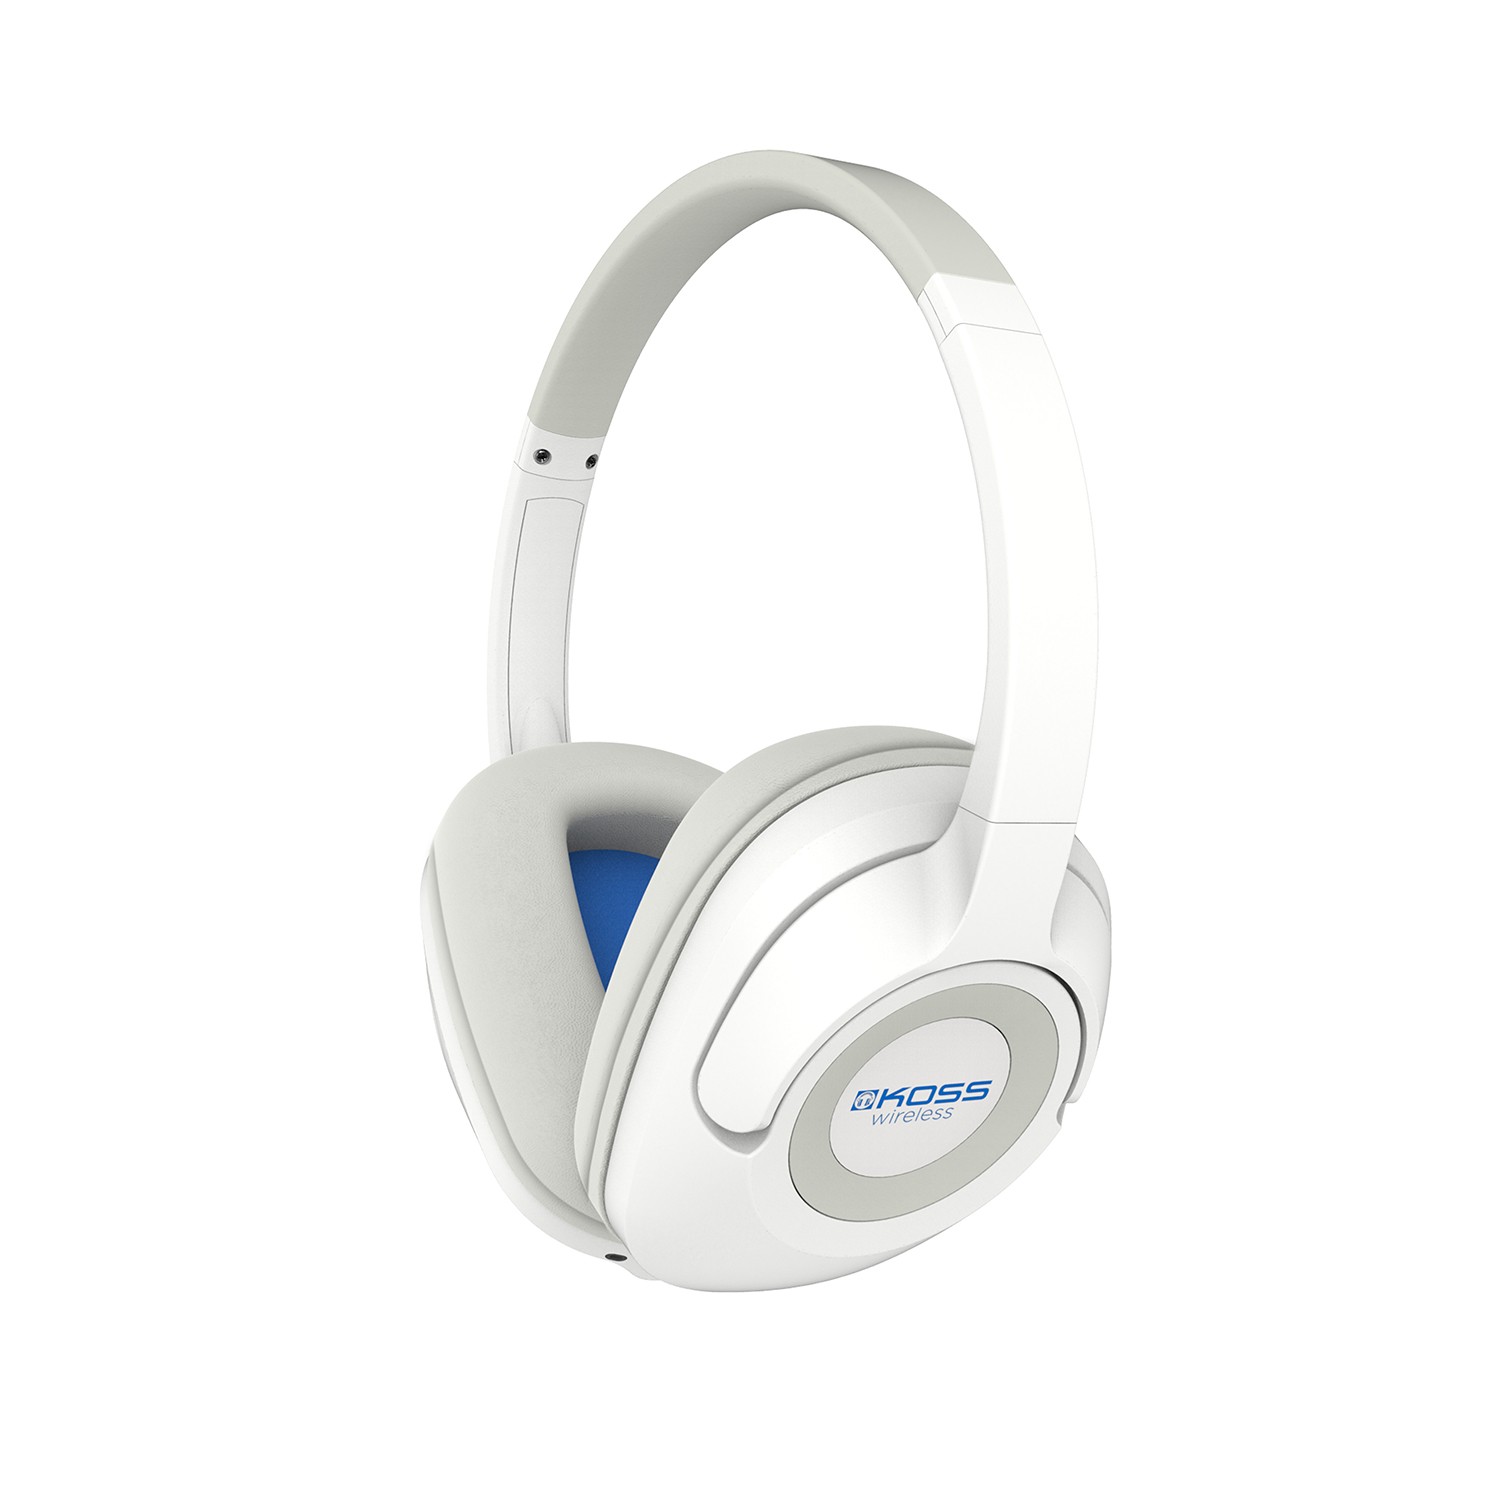 BT539i Wireless Headphones - Bluetooth Over Ear Headphones | Koss ...